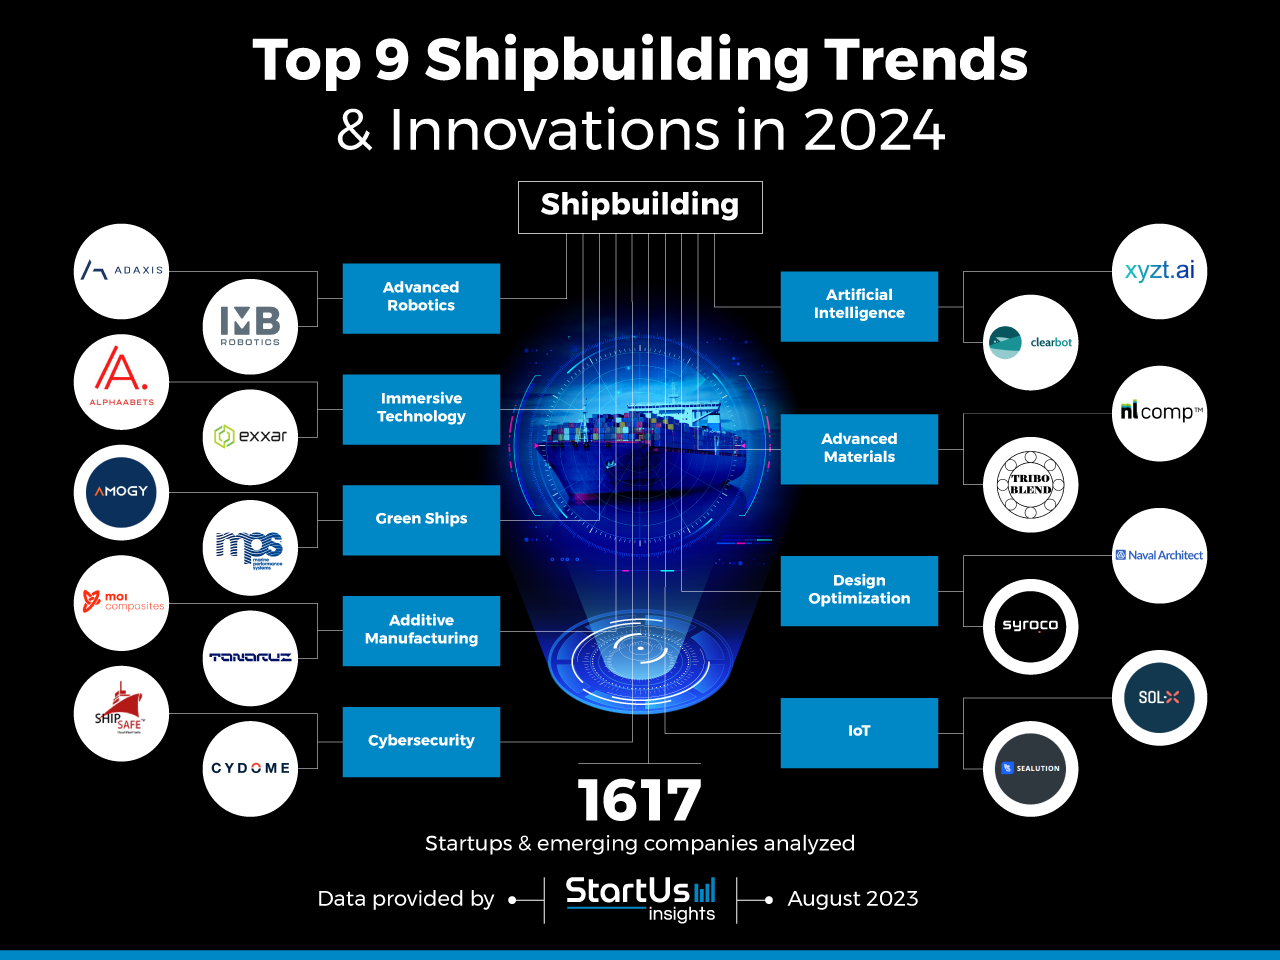 Top 9 Shipbuilding Trends in 2024